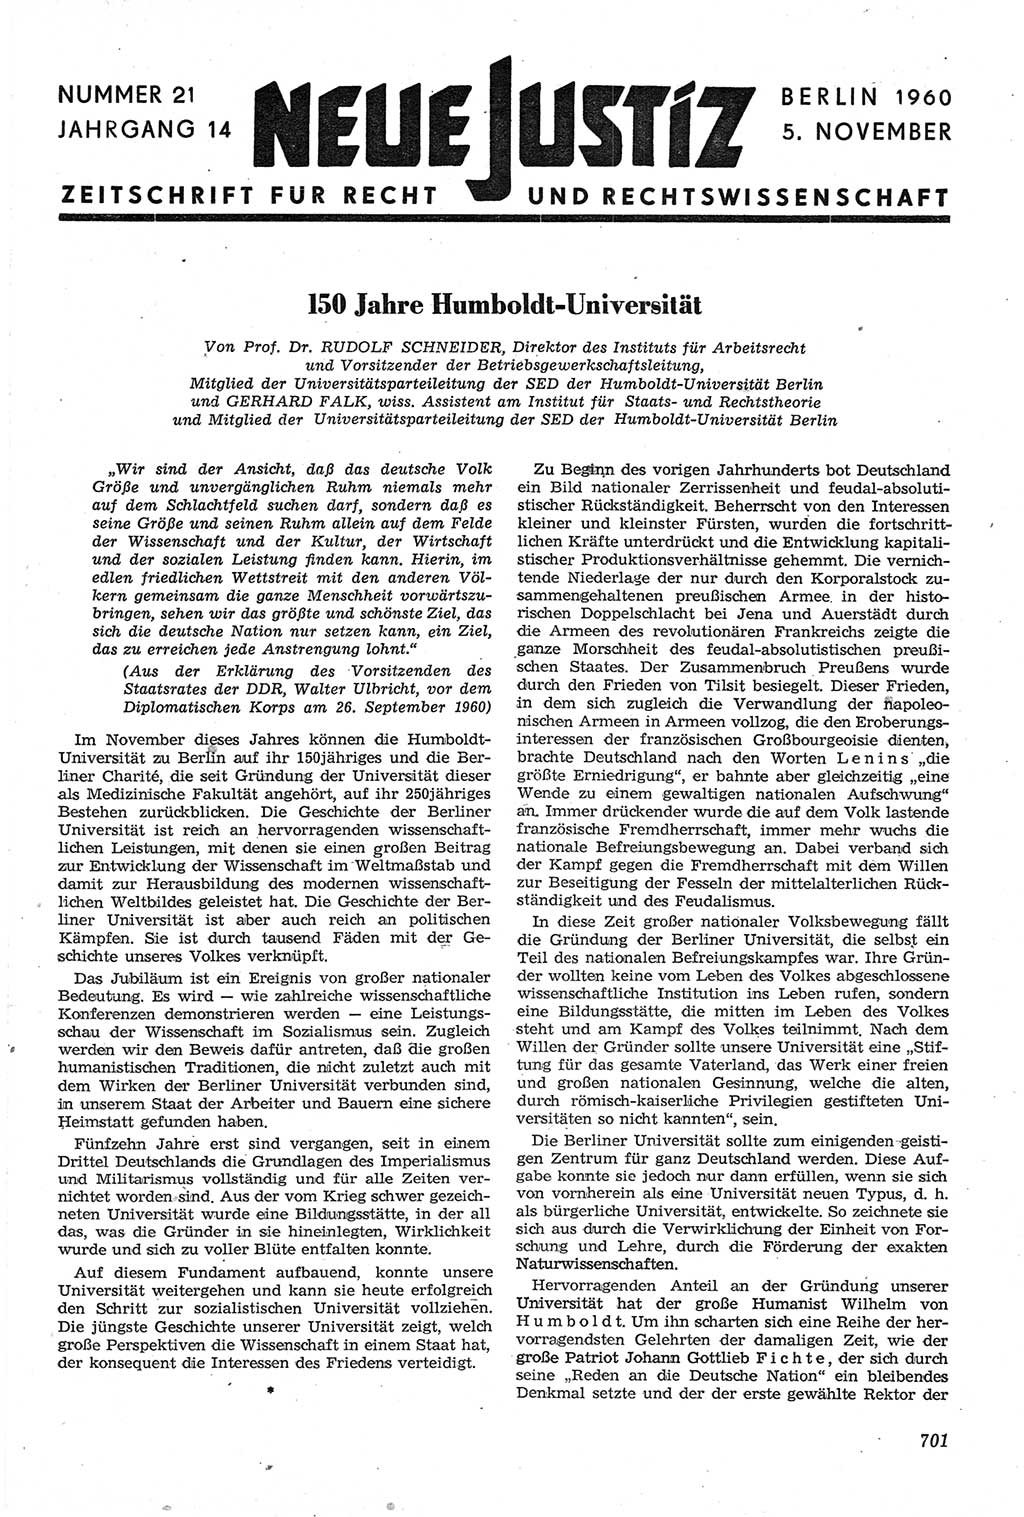 Neue Justiz (NJ), Zeitschrift für Recht und Rechtswissenschaft [Deutsche Demokratische Republik (DDR)], 14. Jahrgang 1960, Seite 701 (NJ DDR 1960, S. 701)